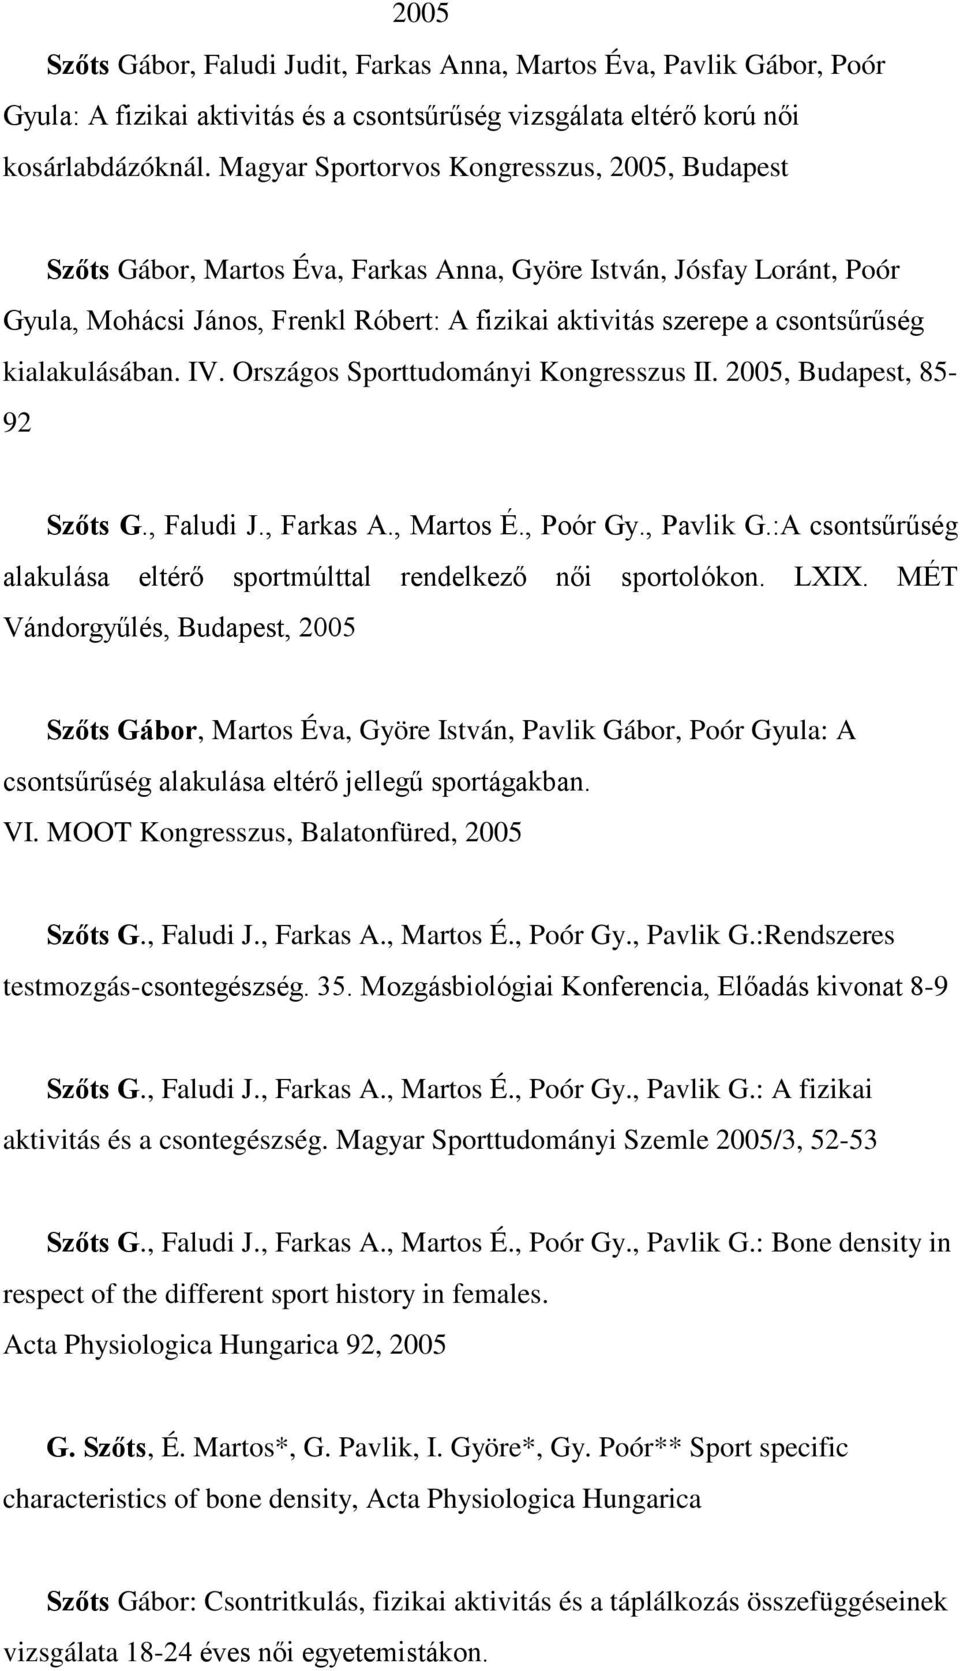 kialakulásában. IV. Országos Sporttudományi Kongresszus II. 2005, Budapest, 85-92 Szőts G., Faludi J., Farkas A., Martos É., Poór Gy., Pavlik G.